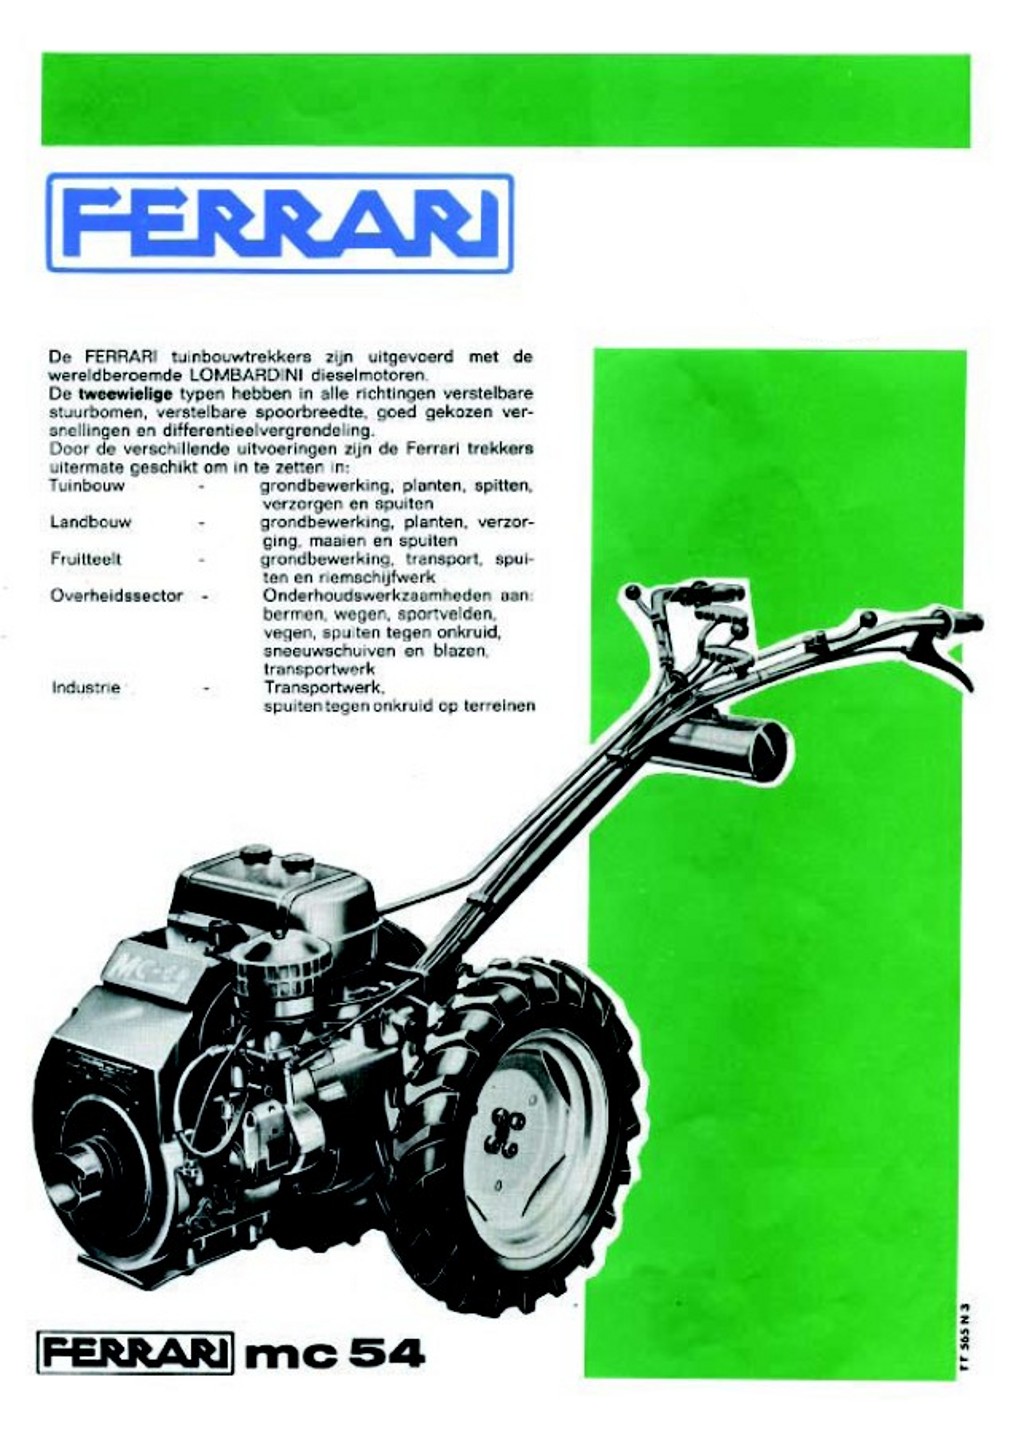 Publicité Ferrari 311